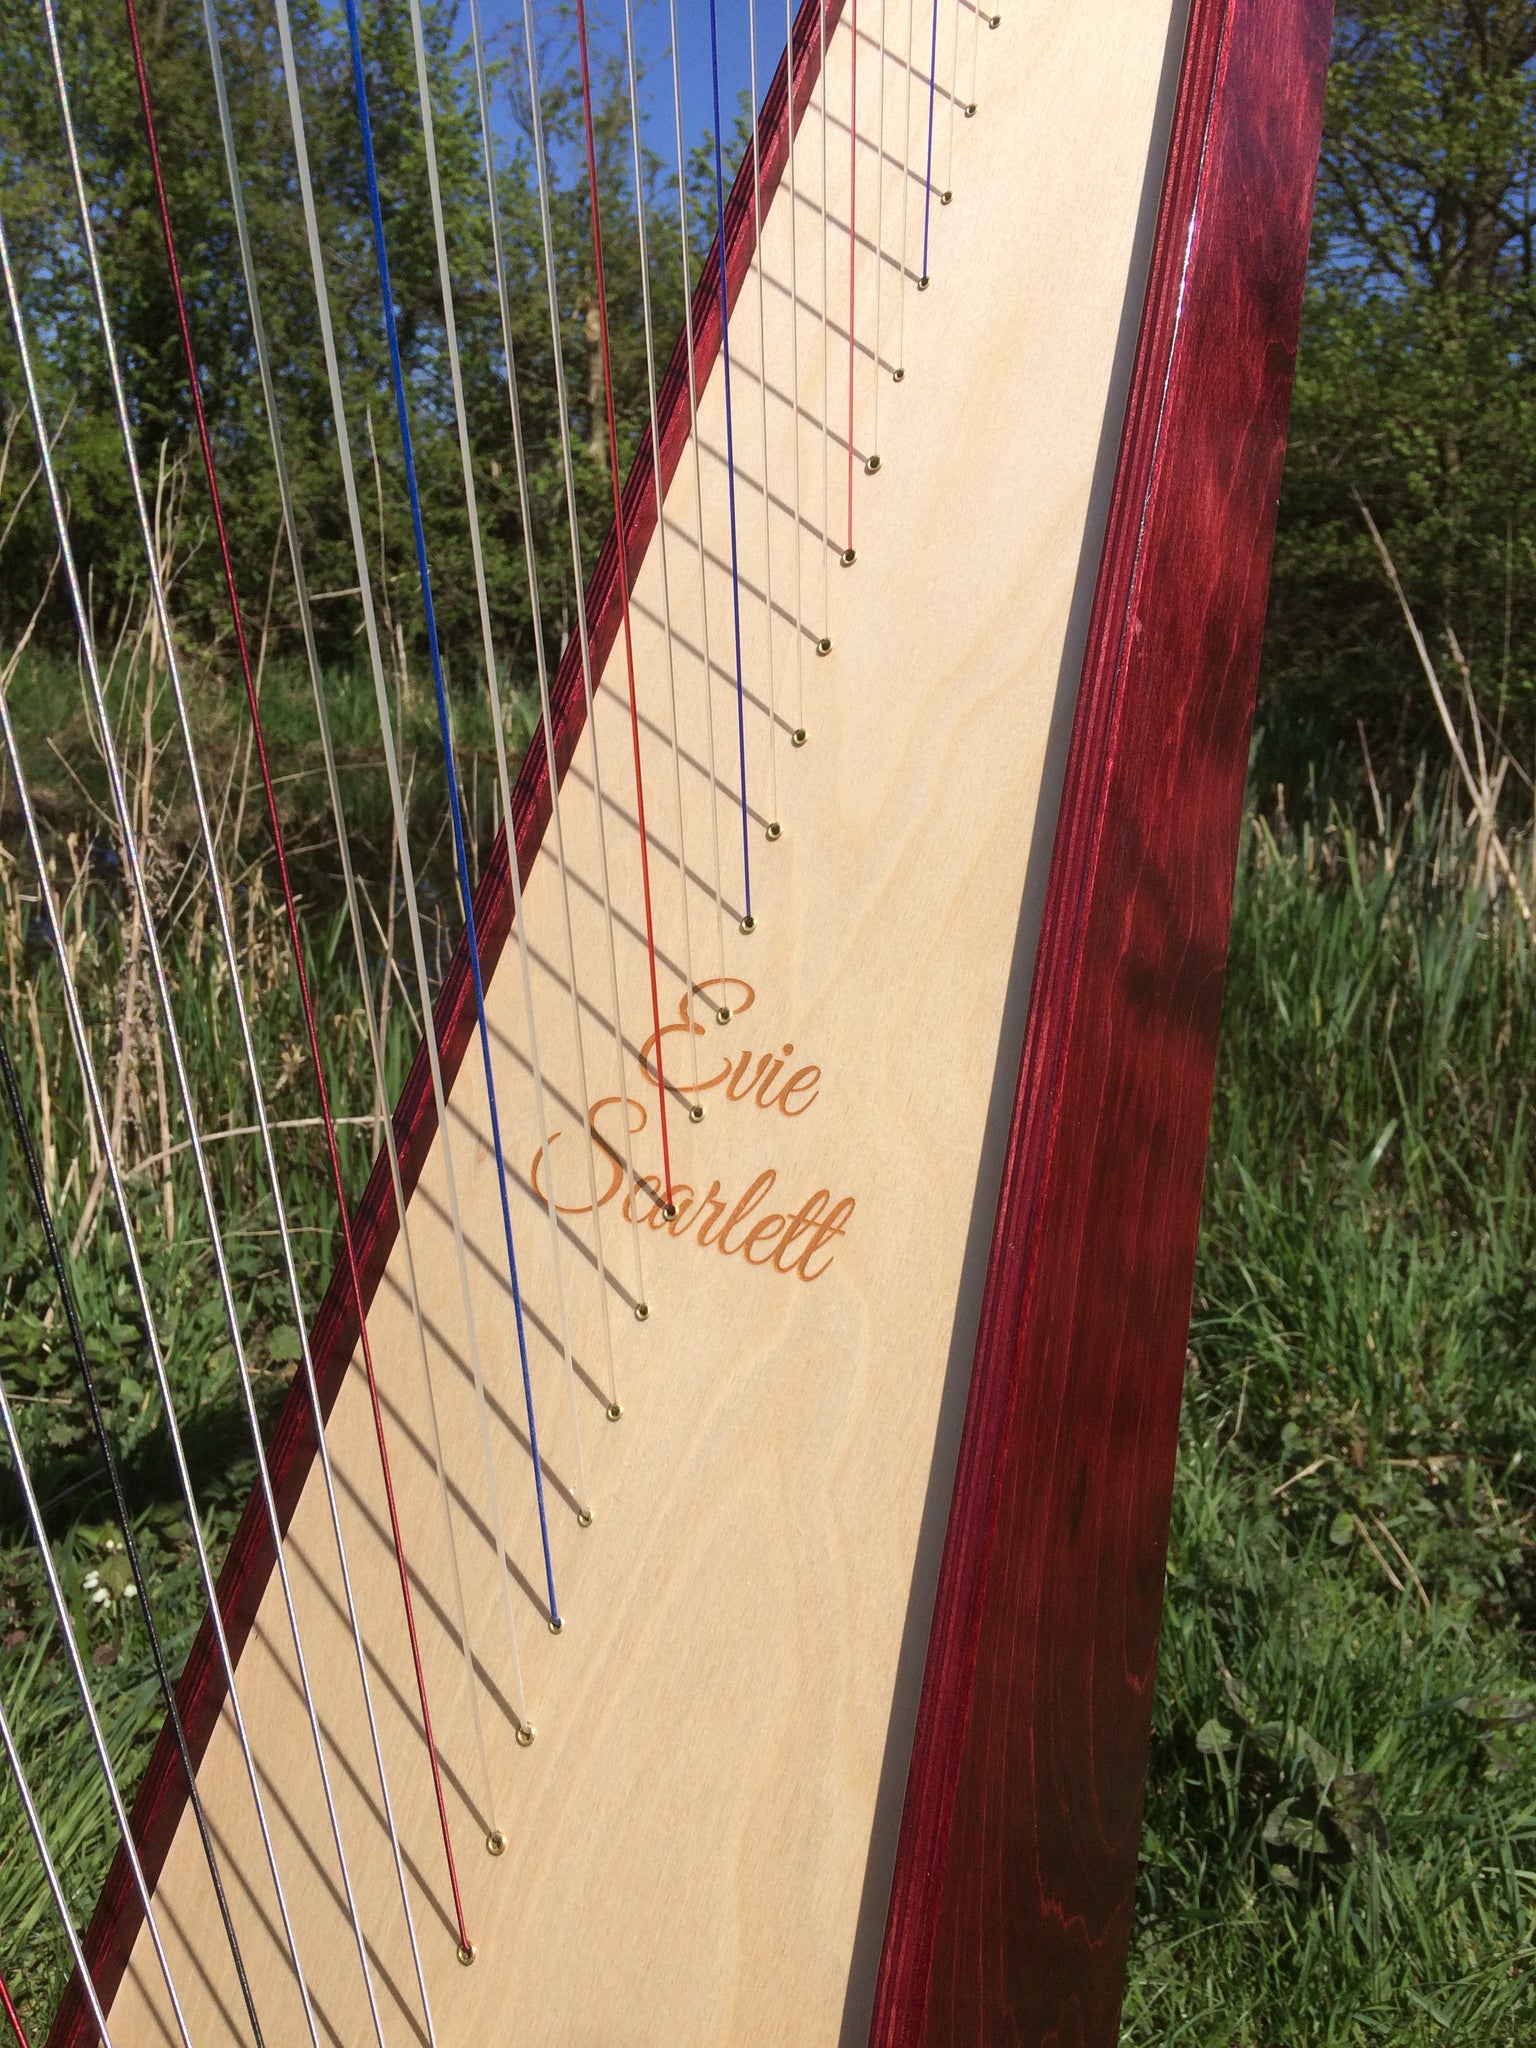 Personalisation of Your Derwent Harp